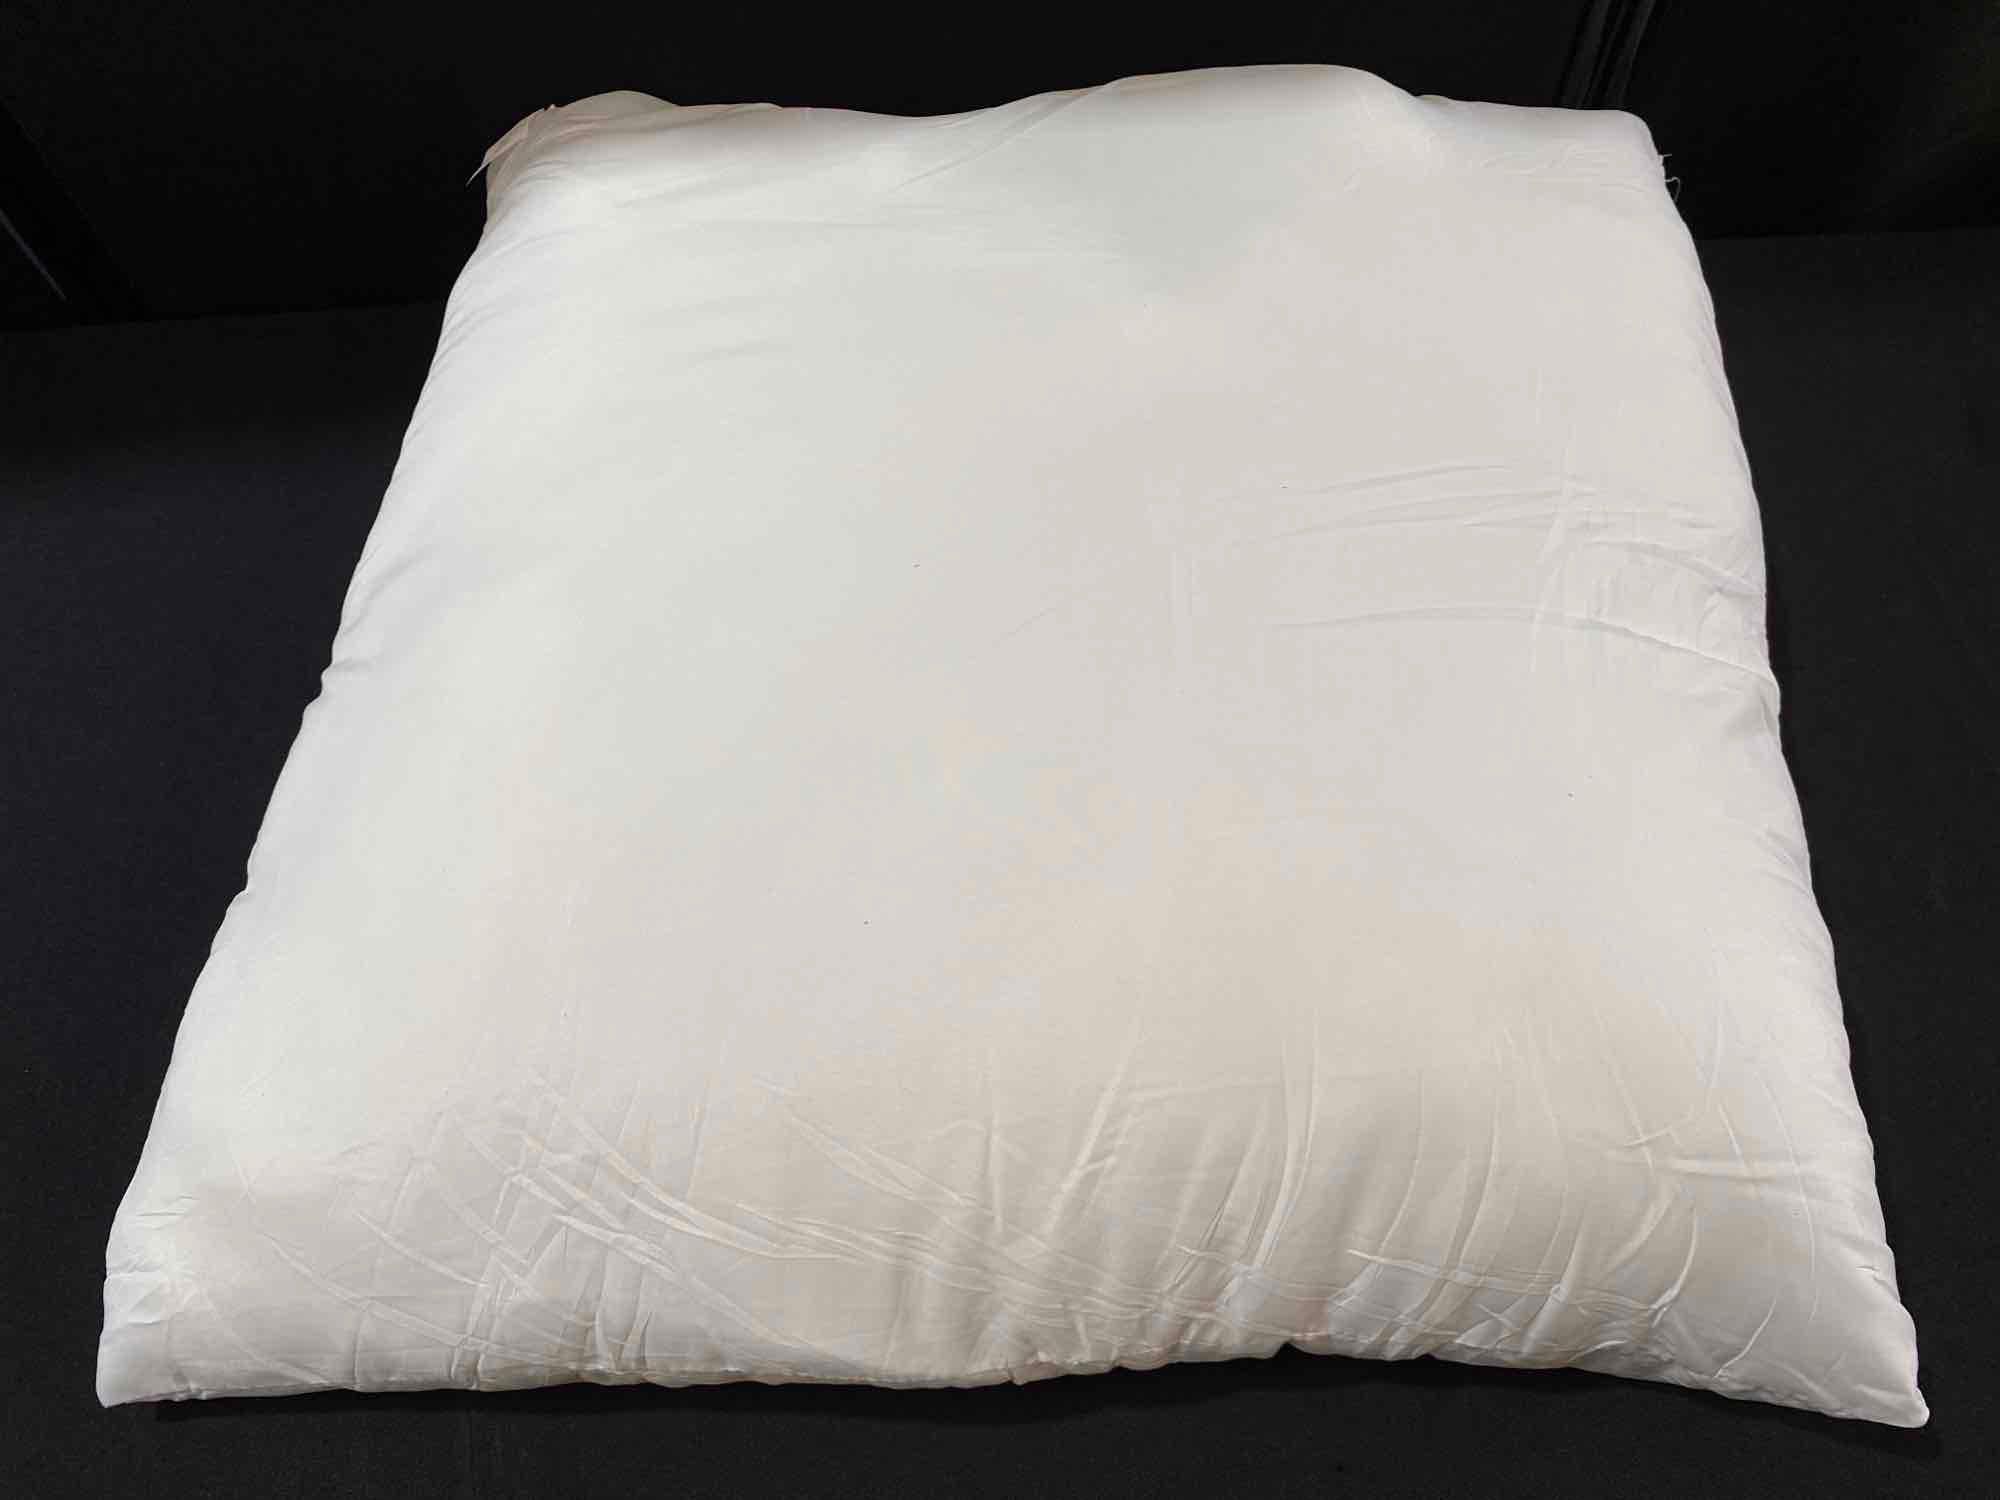 2 EDOW Throw Pillow Inserts Size 28 x 28